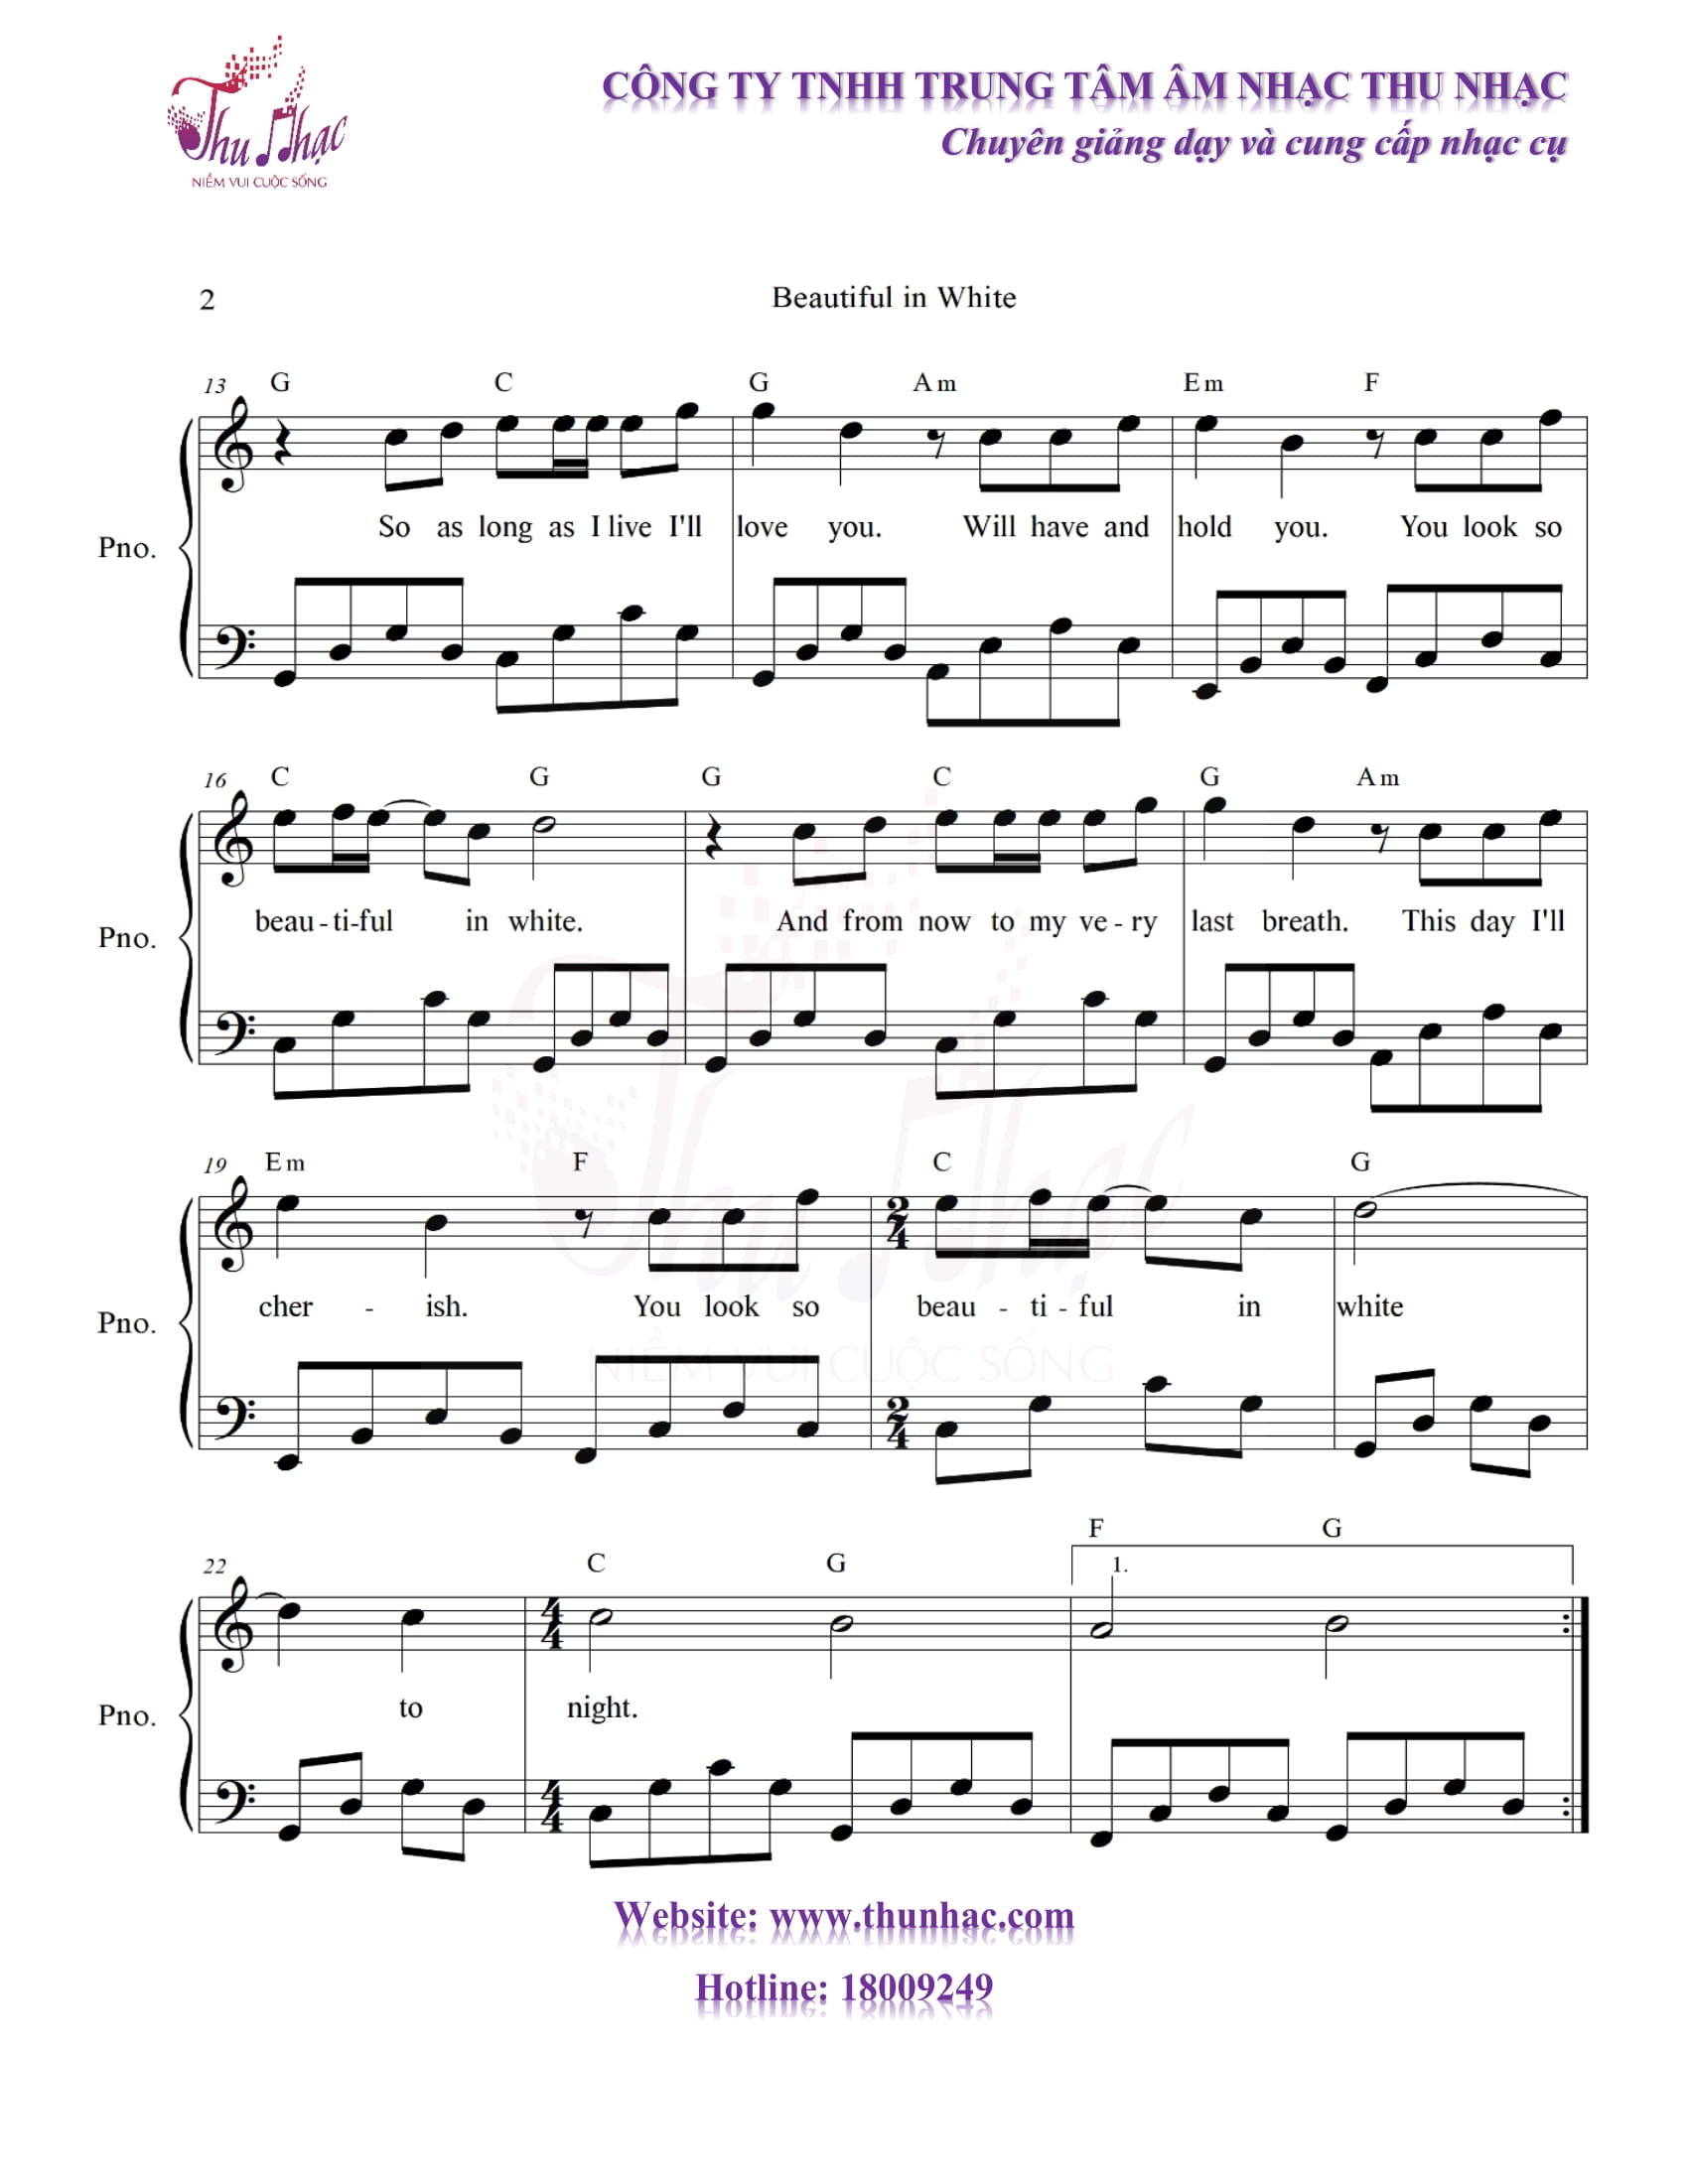 sheet piano beautiful in while có hợp âm